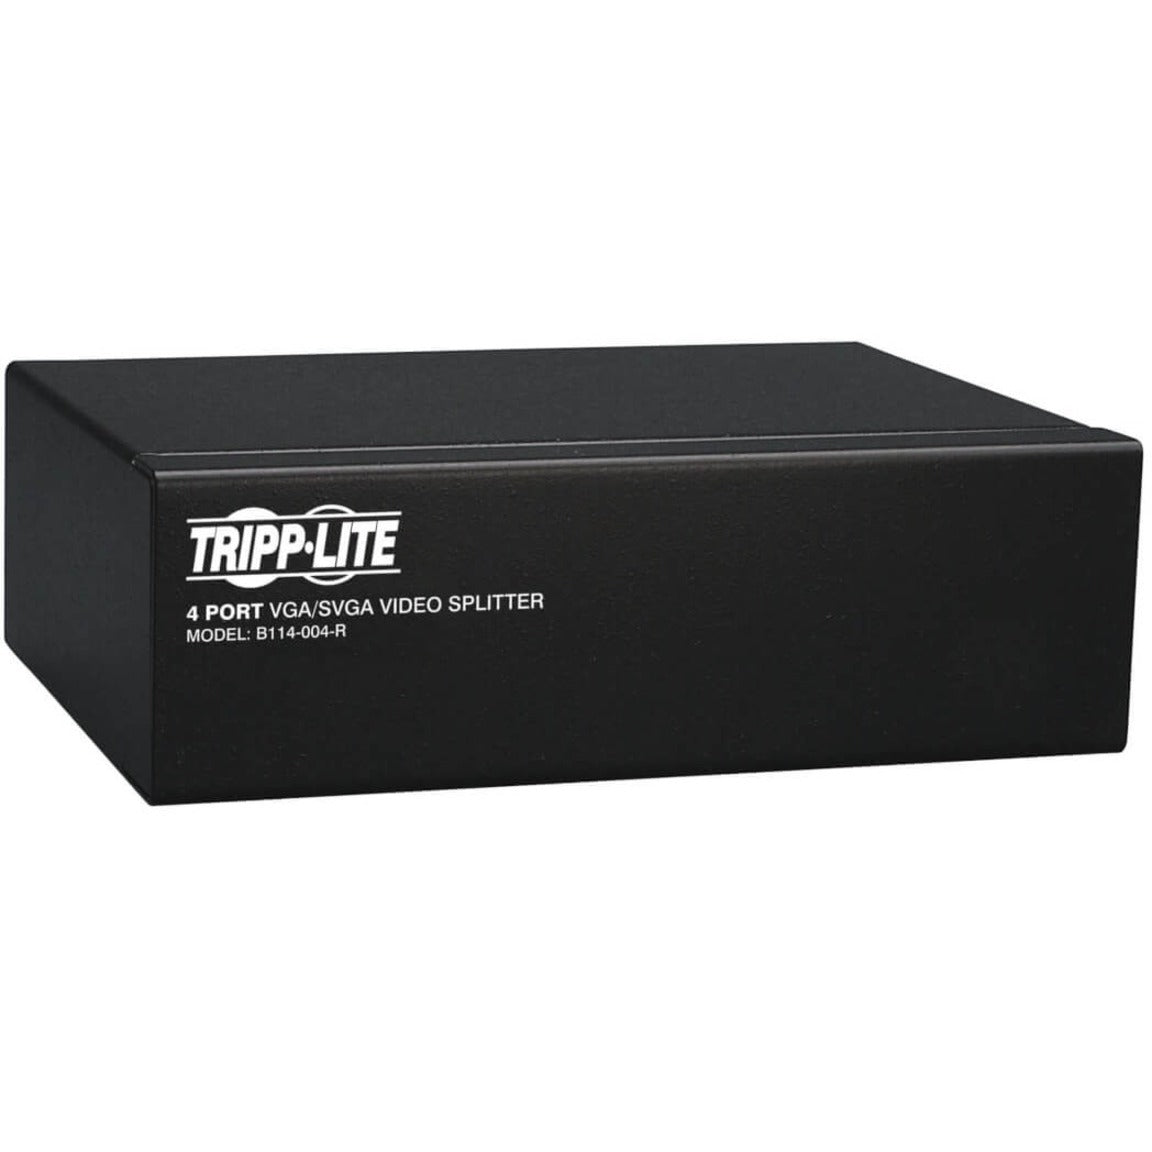 Tripp Lite B114-004-R VGA Splitter, 4-Port Video Splitter, QXGA, 350 MHz, 3-Year Warranty